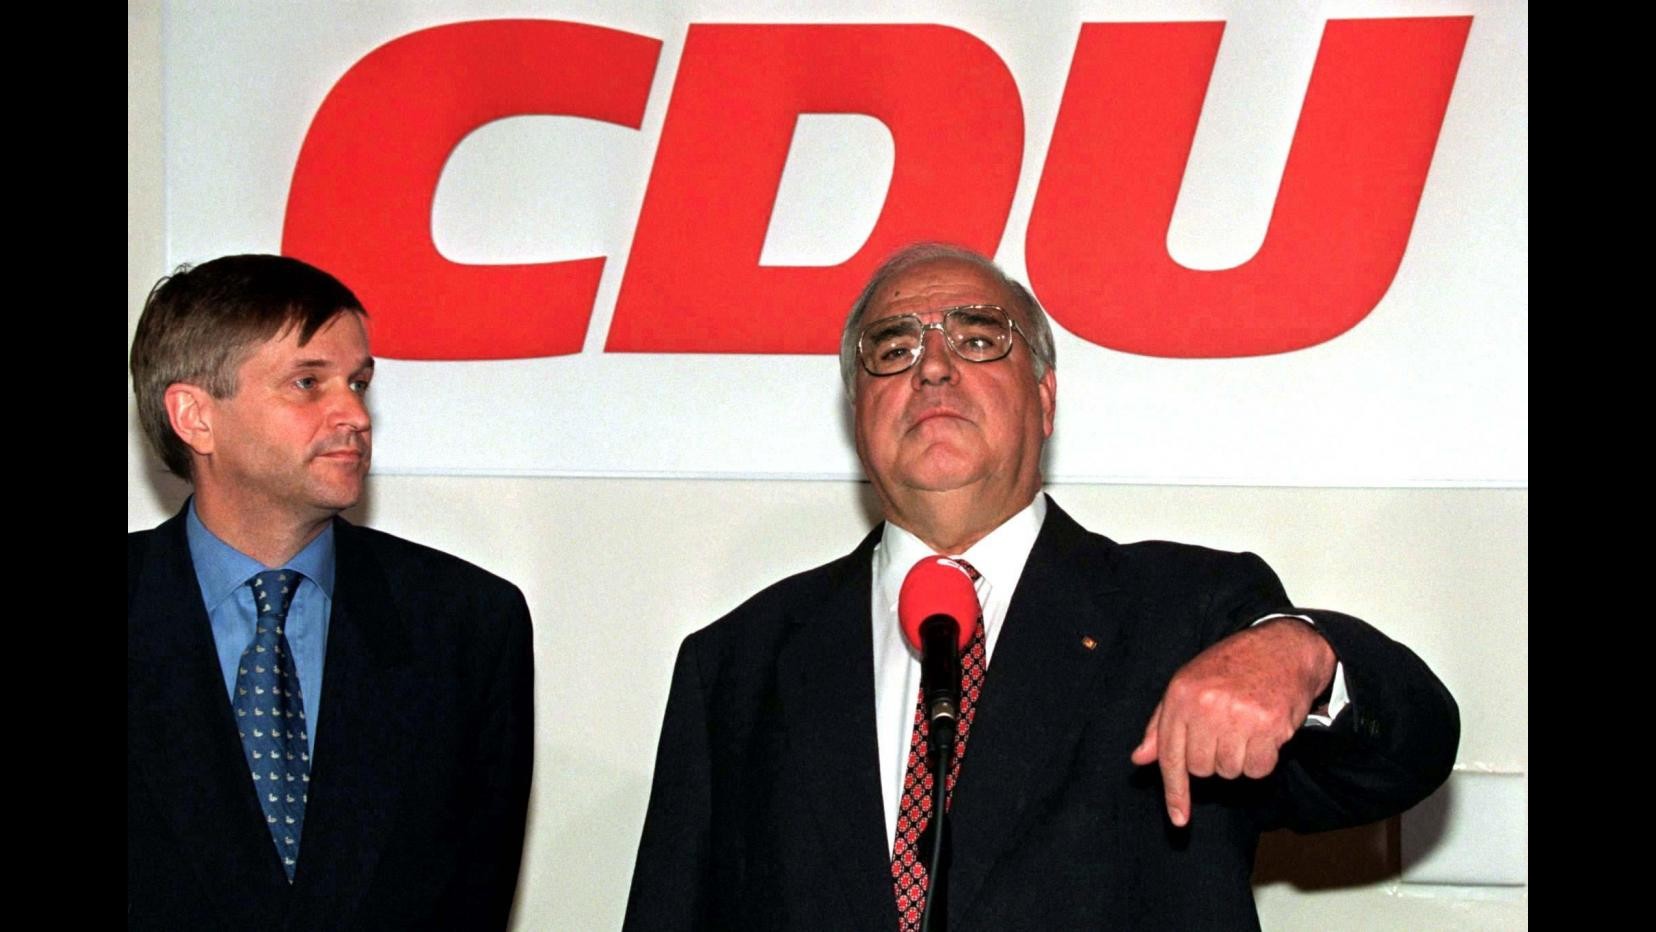 Addio a Helmut Kohl, padre della Germania unificata